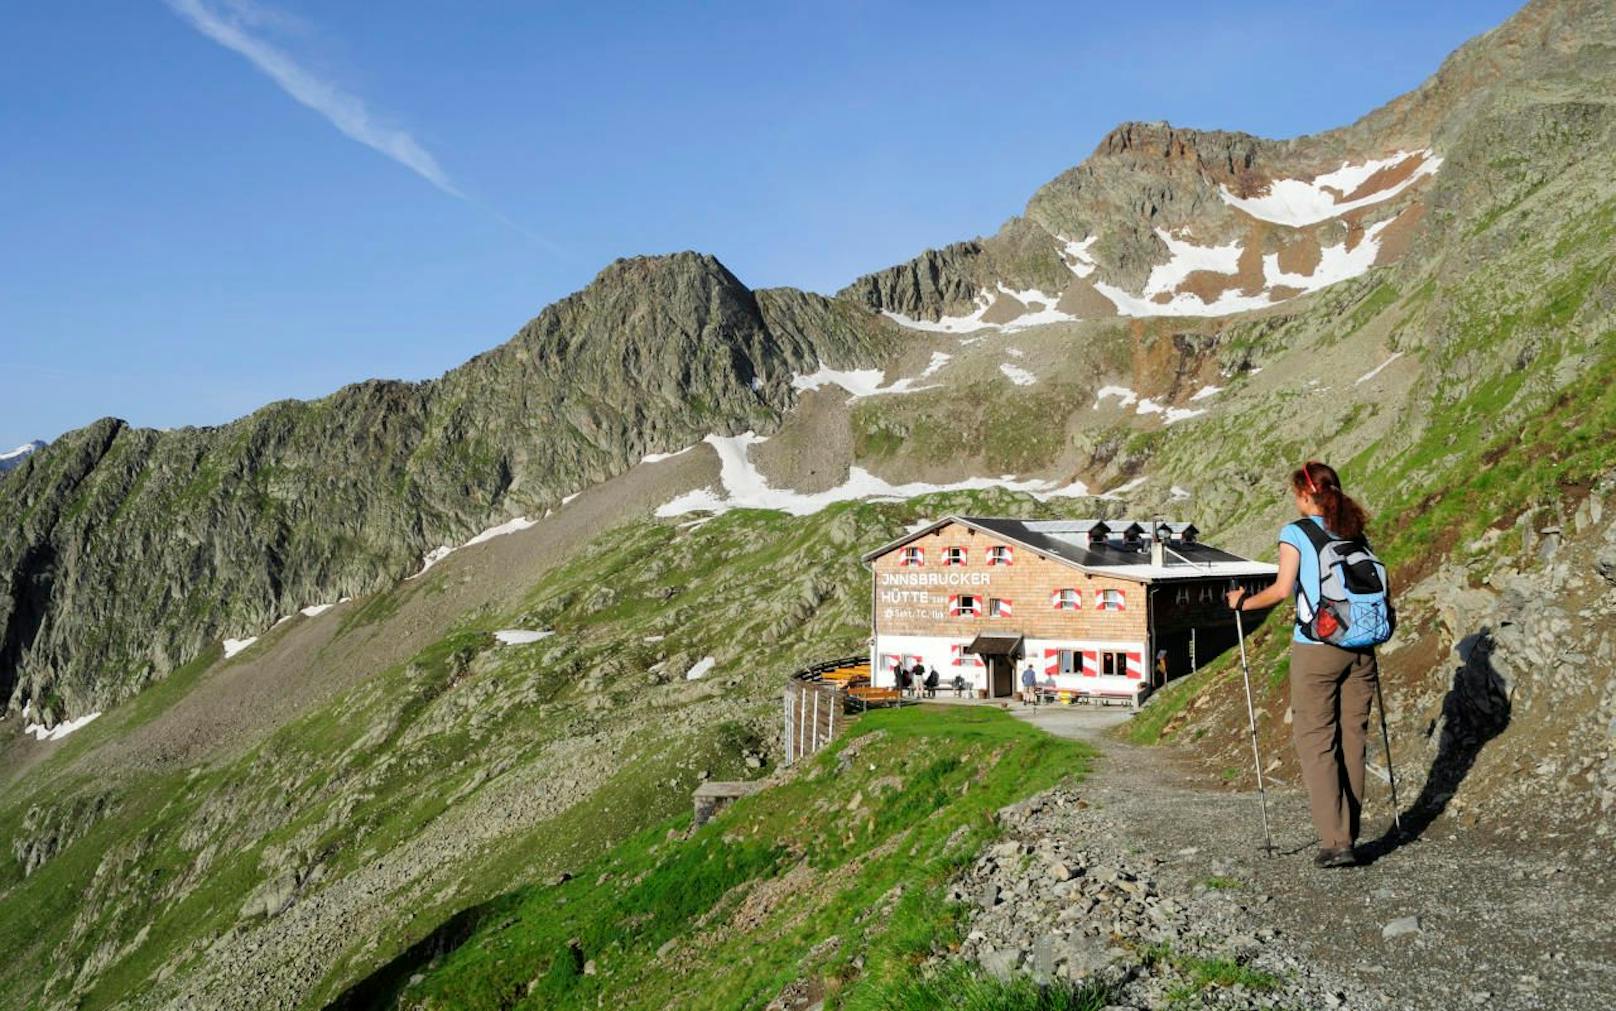 Bergwanderin bei Innsbrucker Hütte am Habicht im Gschnitztal, Stubaier Alpen, Tirol.